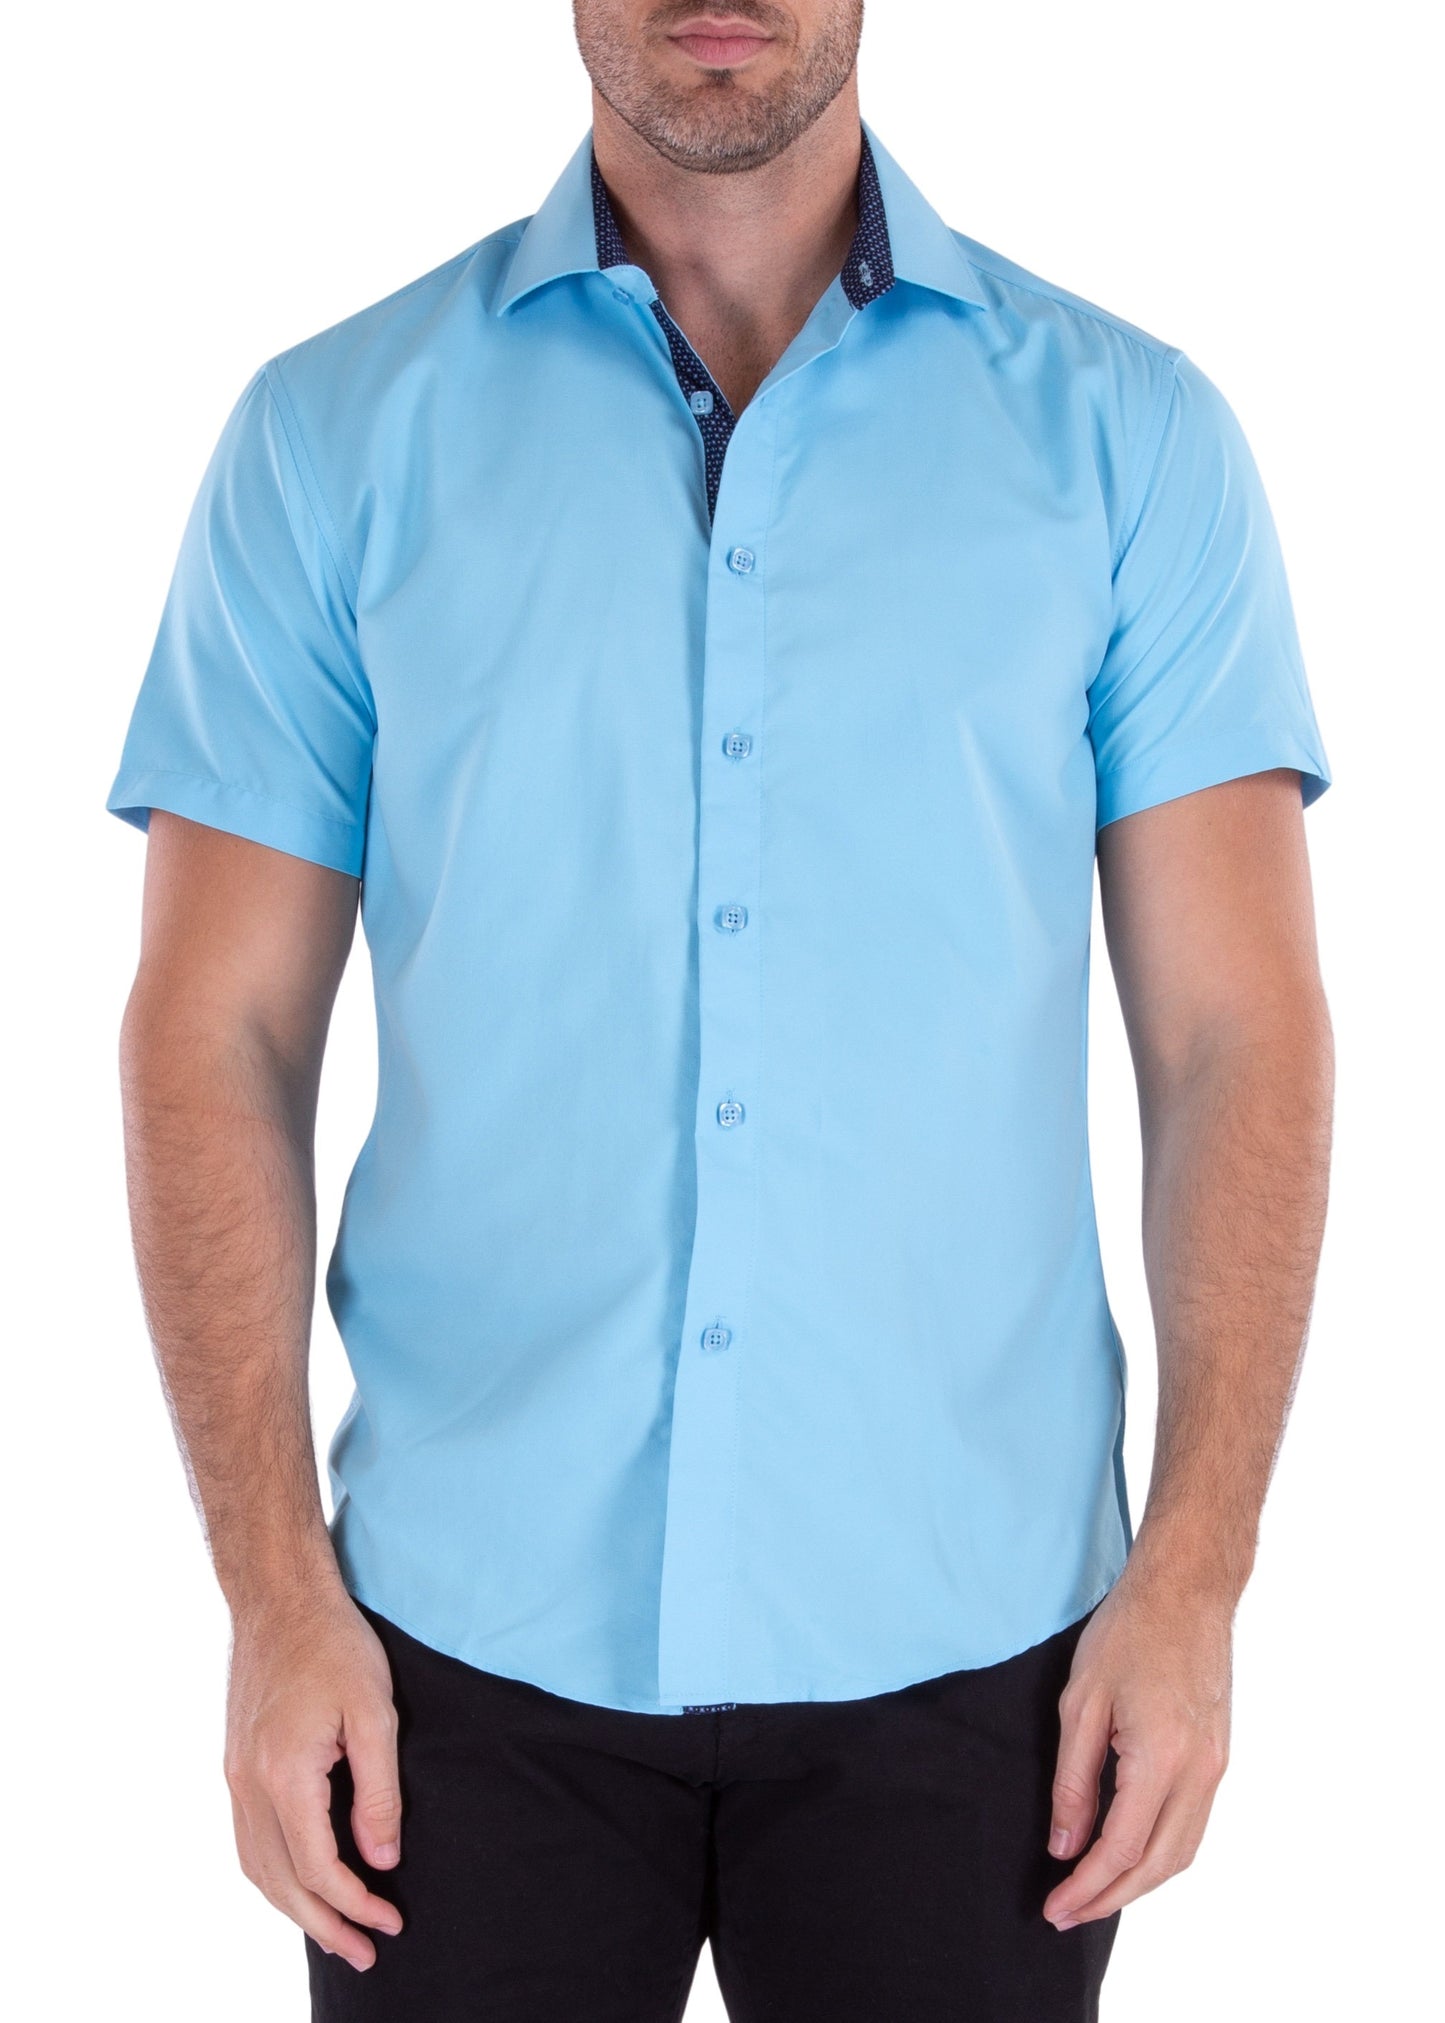 'The Standard' Short Sleeve Shirt